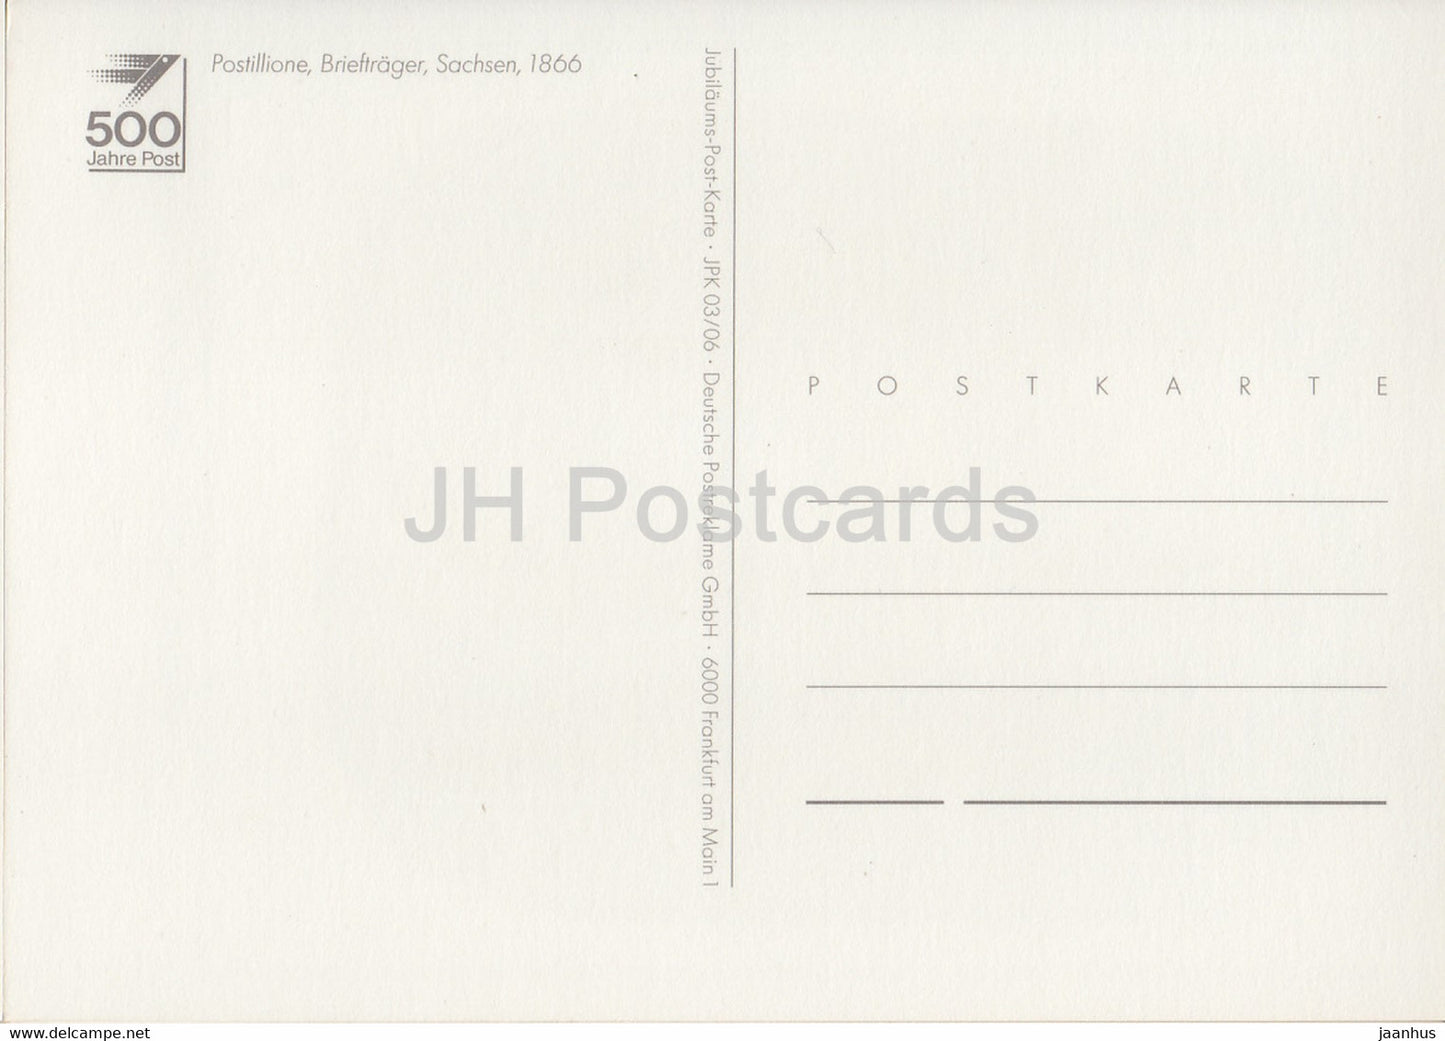 Postillione Brieftrager - Sachsen - Postboten - Pferd - Postdienst - Deutschland - unbenutzt